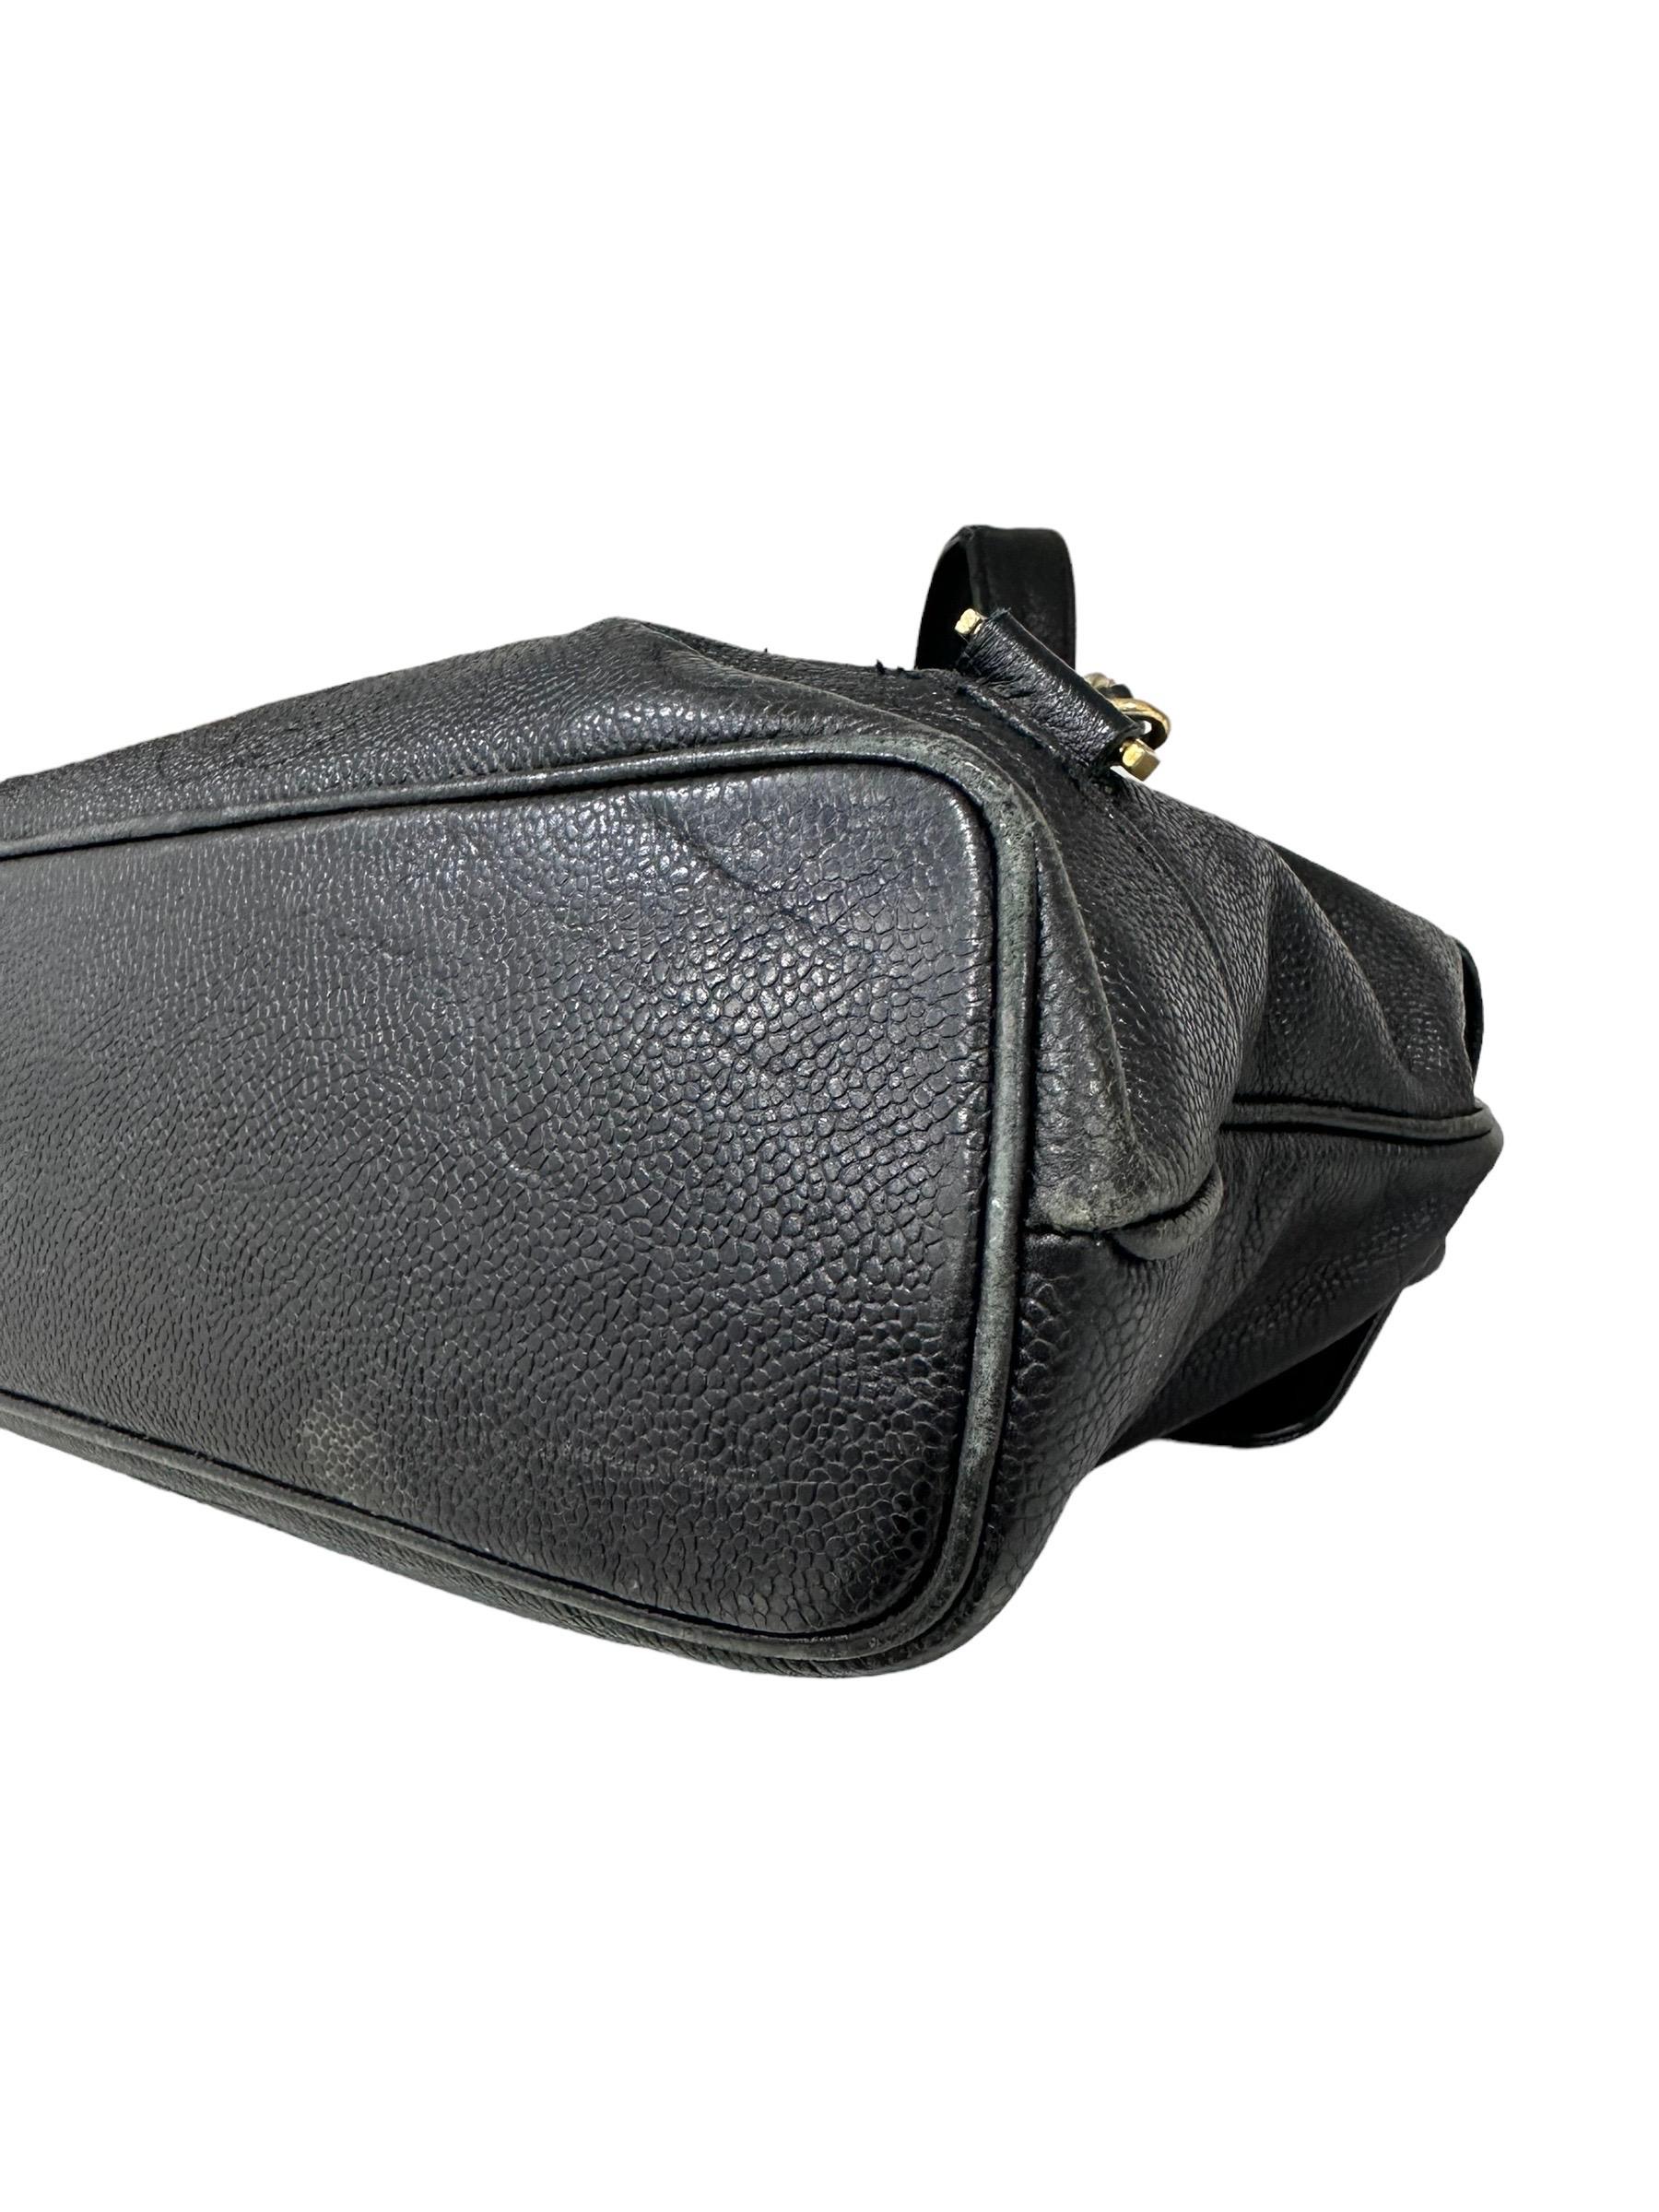 1997 Chanel Black Leather Vintage Backpack  9